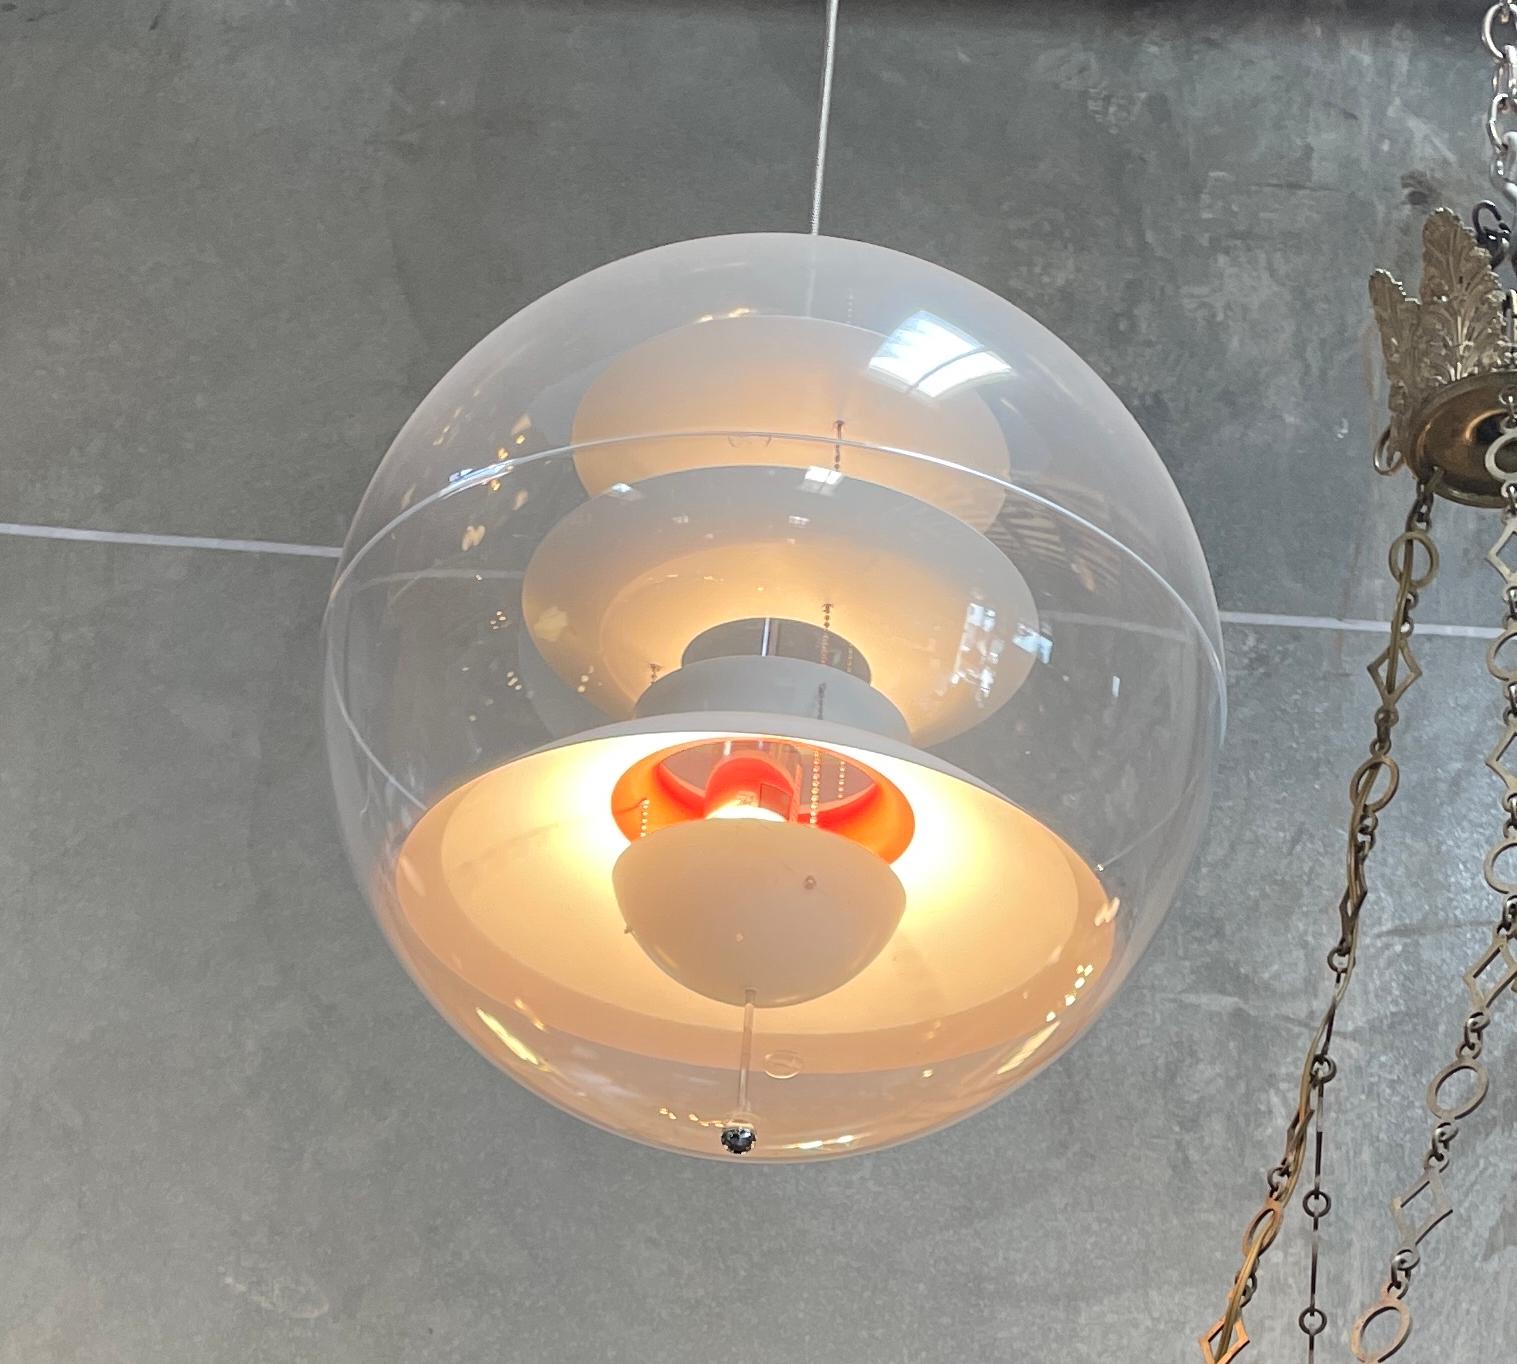 Production récente du design de Verner Panton datant de 1977, cette lampe suspendue se compose d'une sphère transparente en acrylique et de réflecteurs en aluminium blanc avec quelques parties intérieures rouges et émet une belle lumière diffuse. 